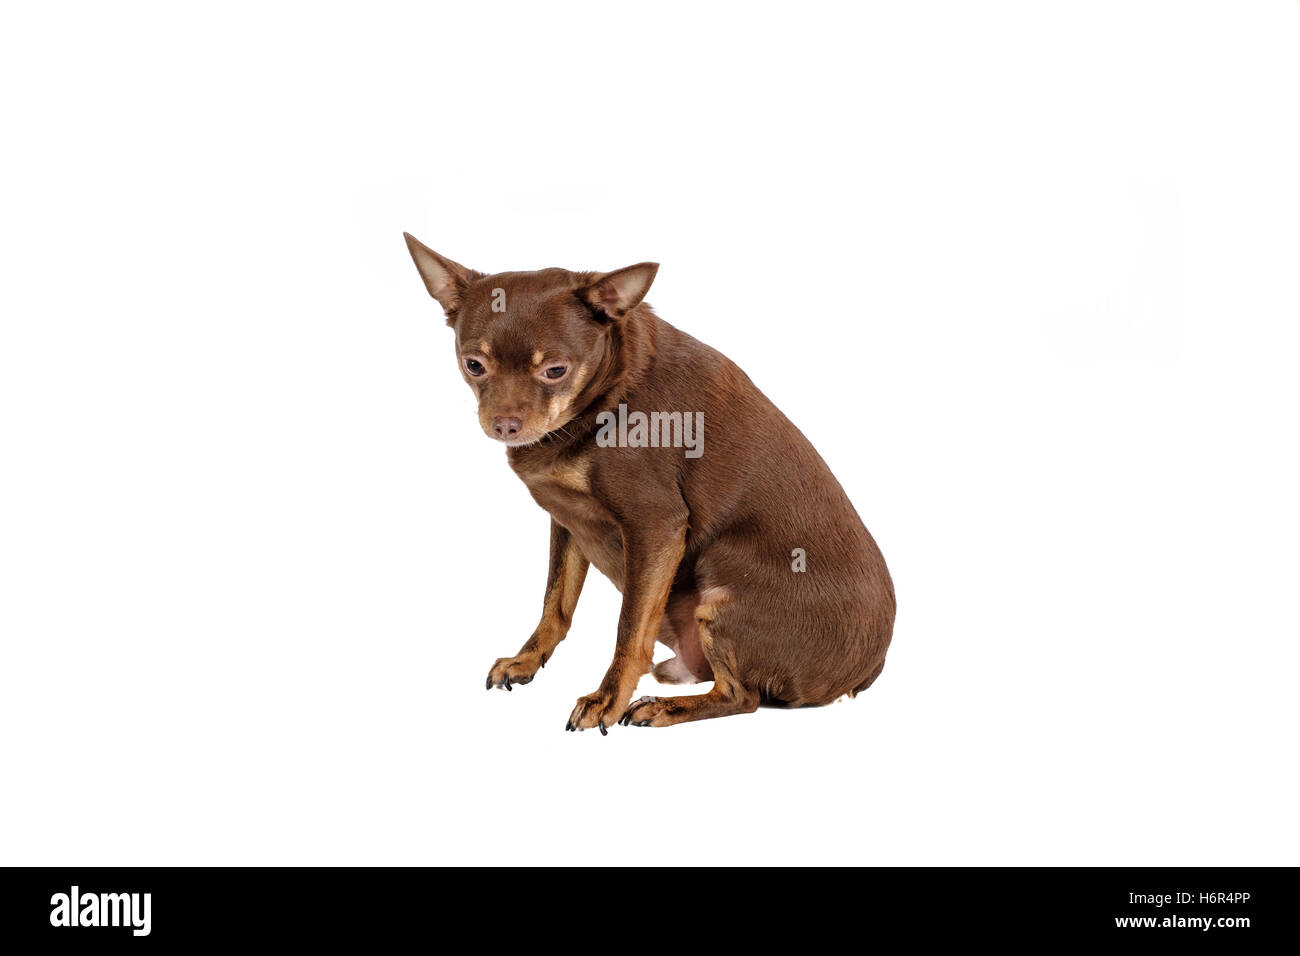 Small sad dog sitting isolated Stock Photo